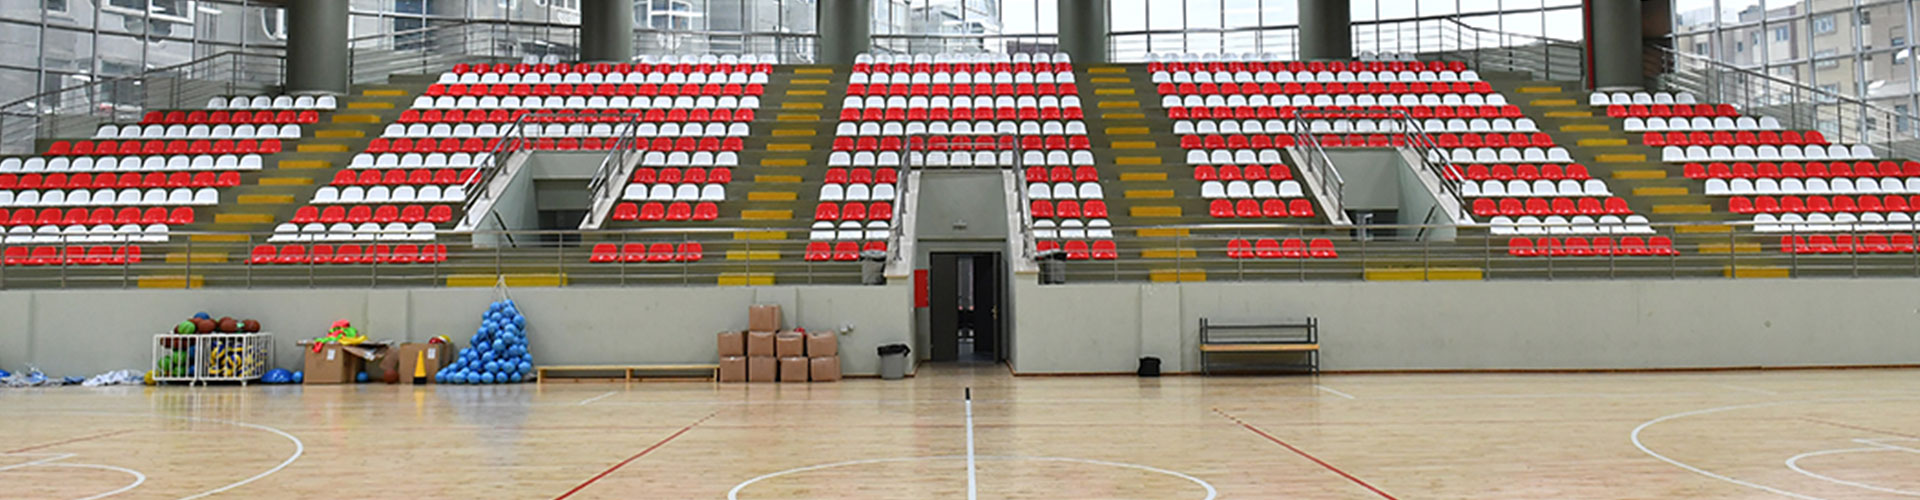 Ünalan Muhsin Yazıcıoğlu Spor Merkezi